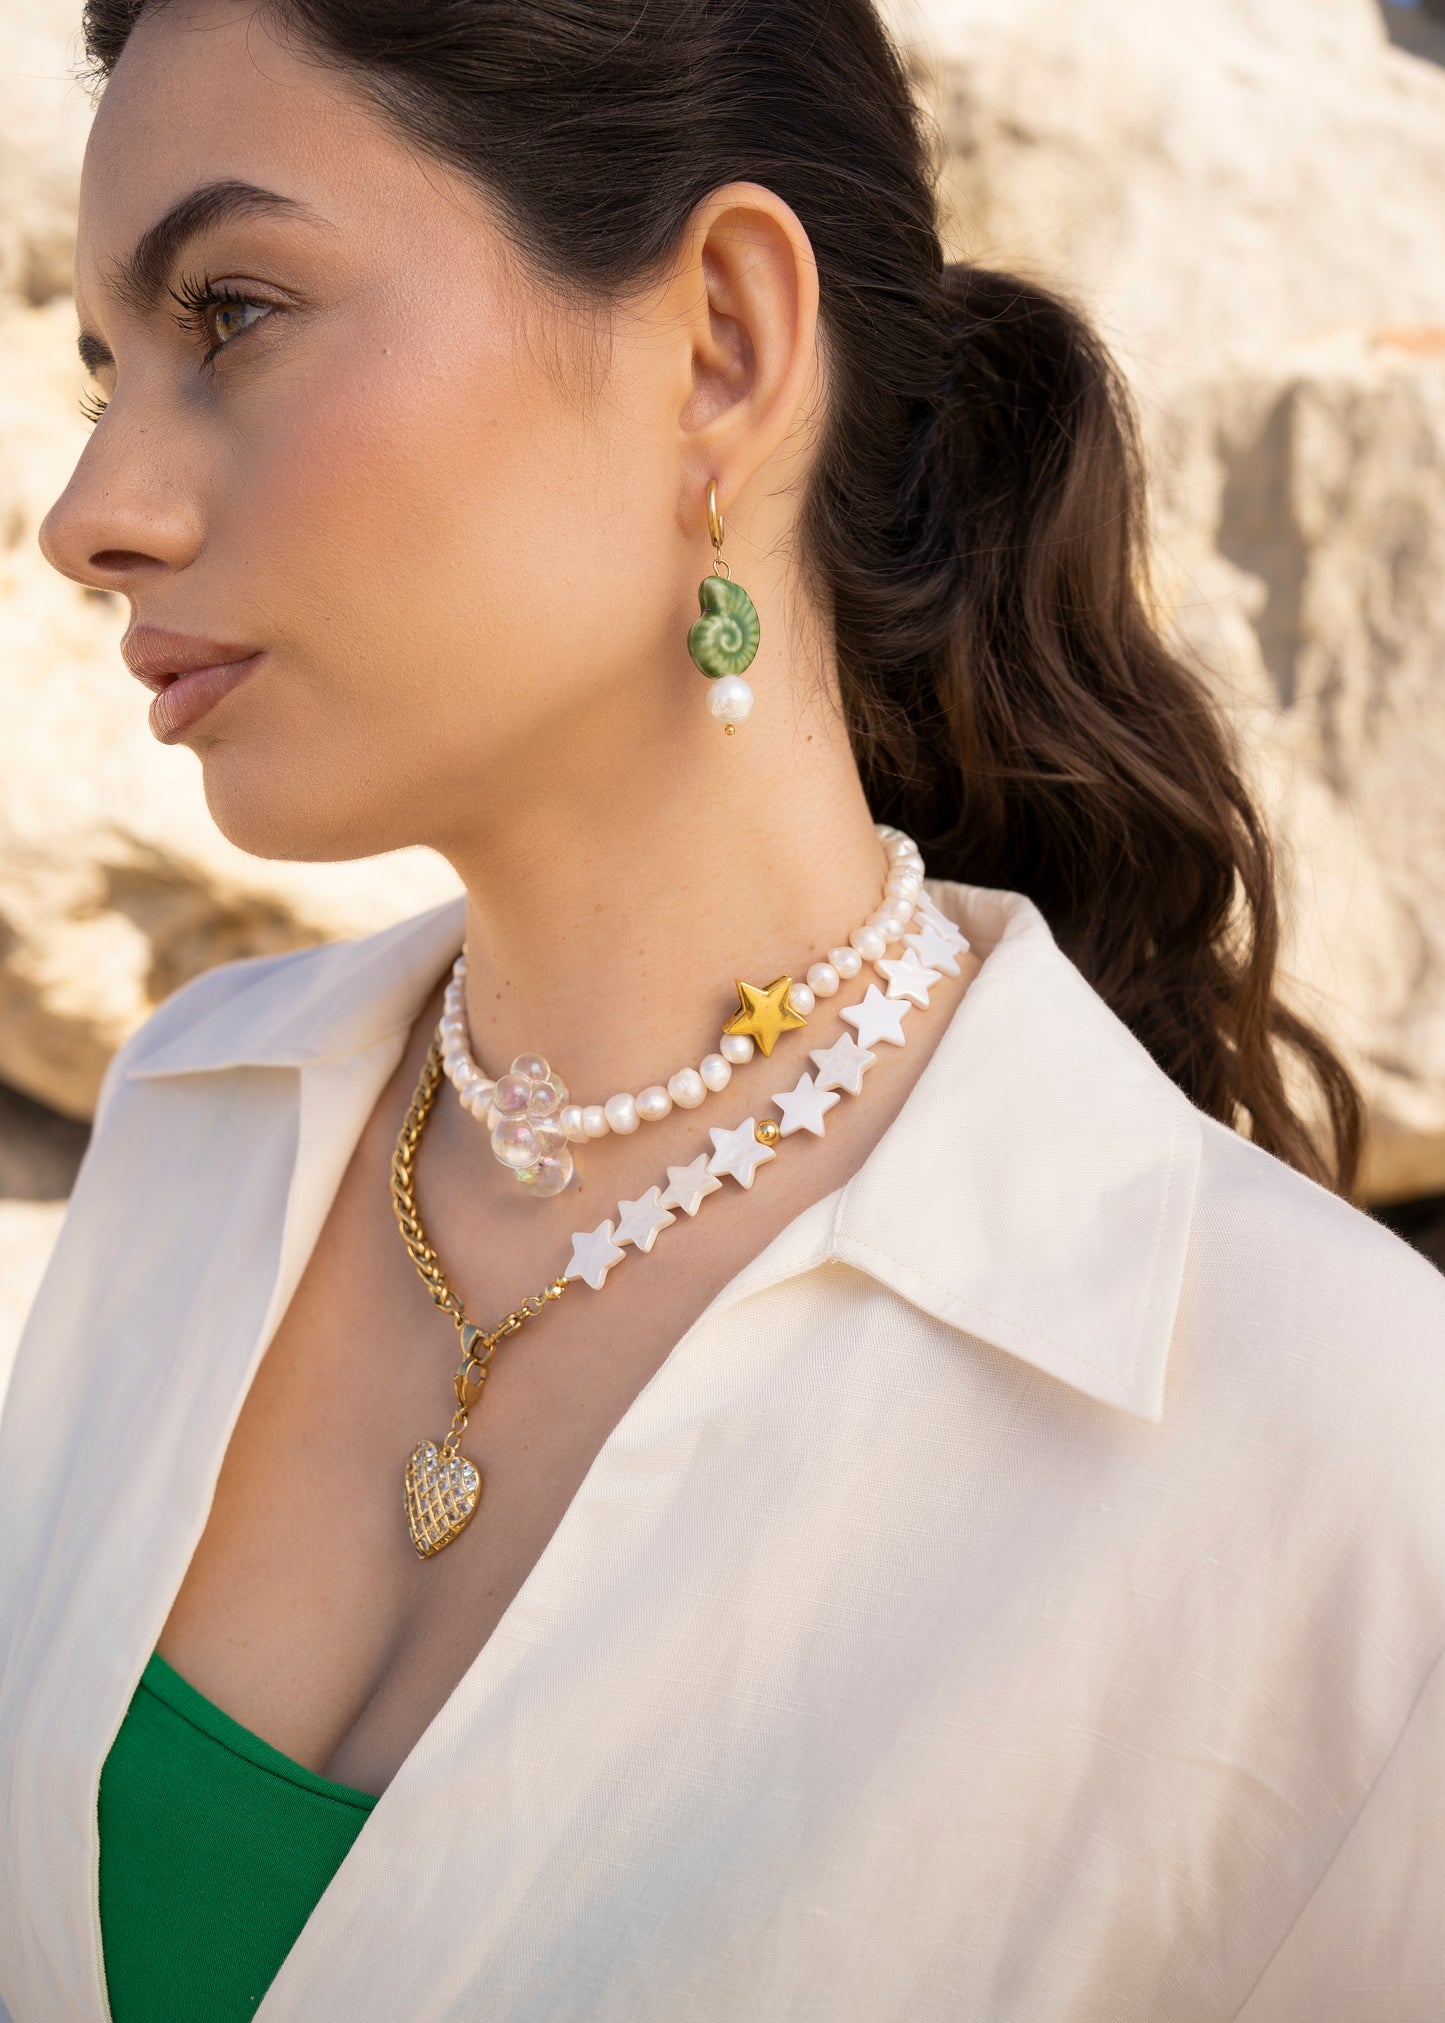 Collares para verano, cadenas doradas, joyas de diseño, diseño original, nuevo en Lulás_Lulás, collar nácar y perla.